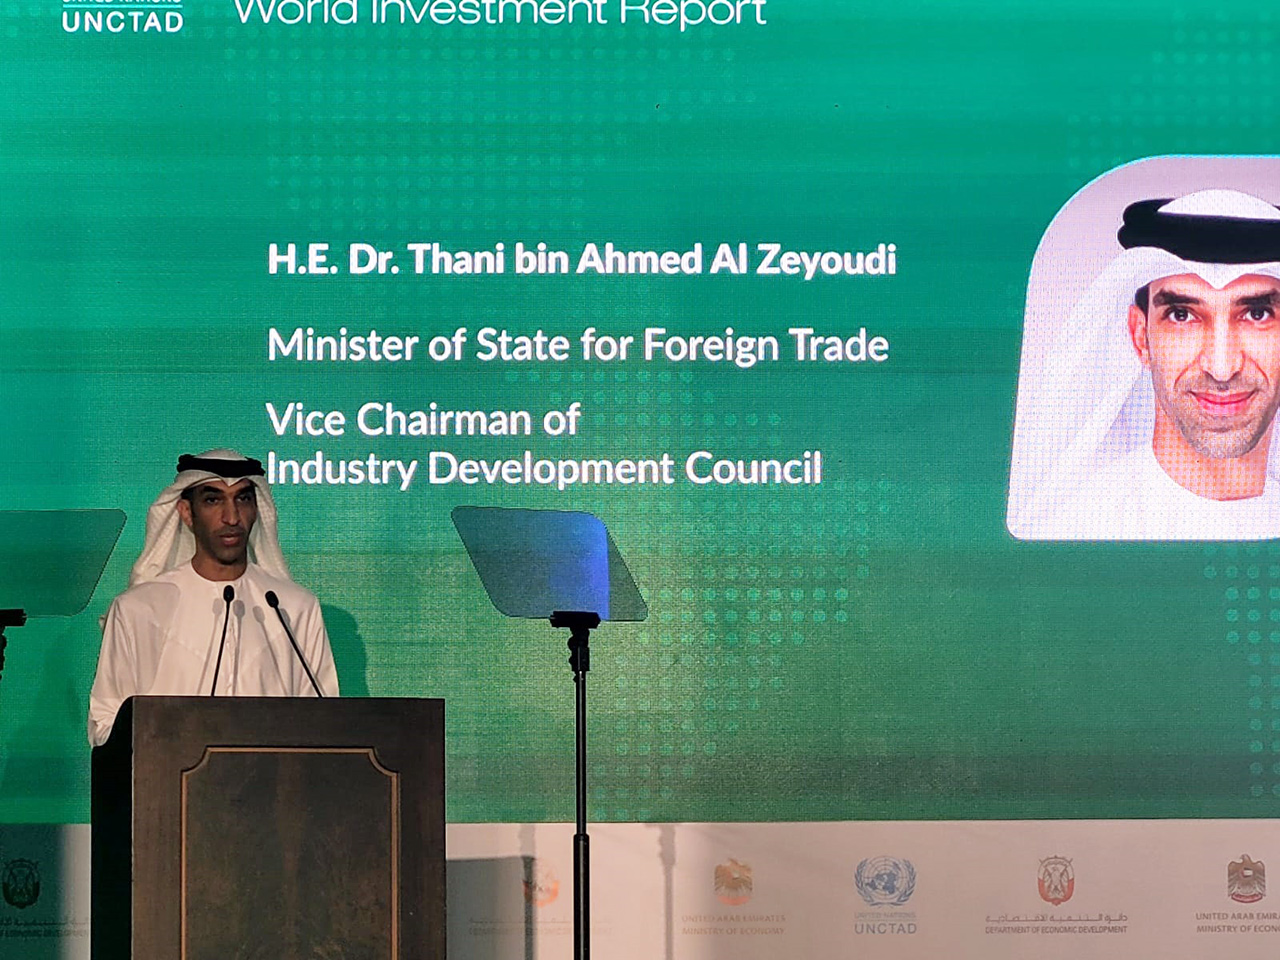 الإمارات الرابعة عالمياً في احتضان المشاريع الجديدة المتقدمة بـ 1000 مشروع طموح